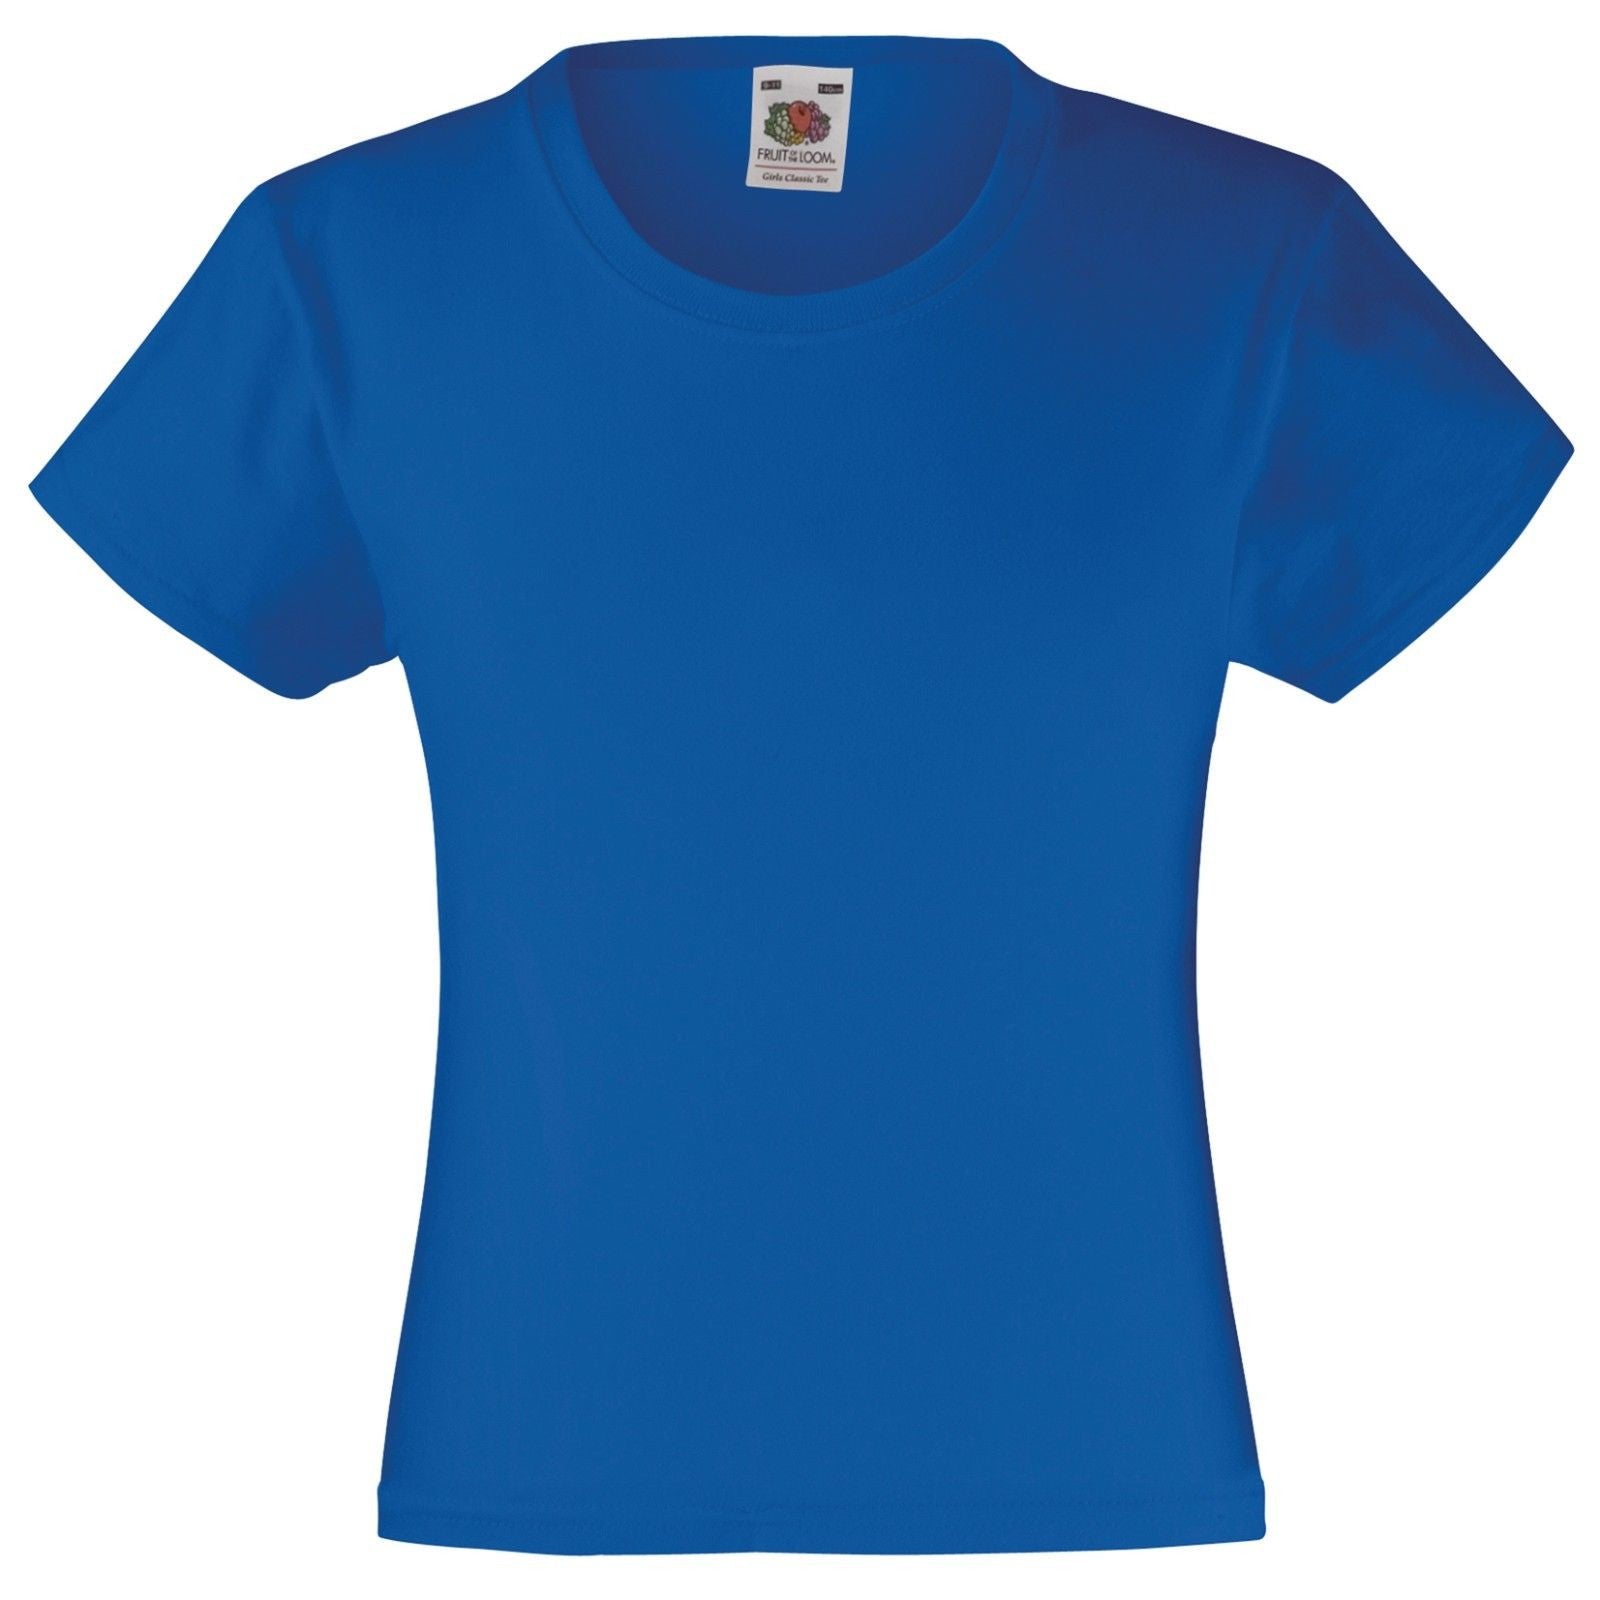 Engager Bank pedicab Buy Girls Plain T Shirts - Royal Blue - Fabulous Bargains Galore